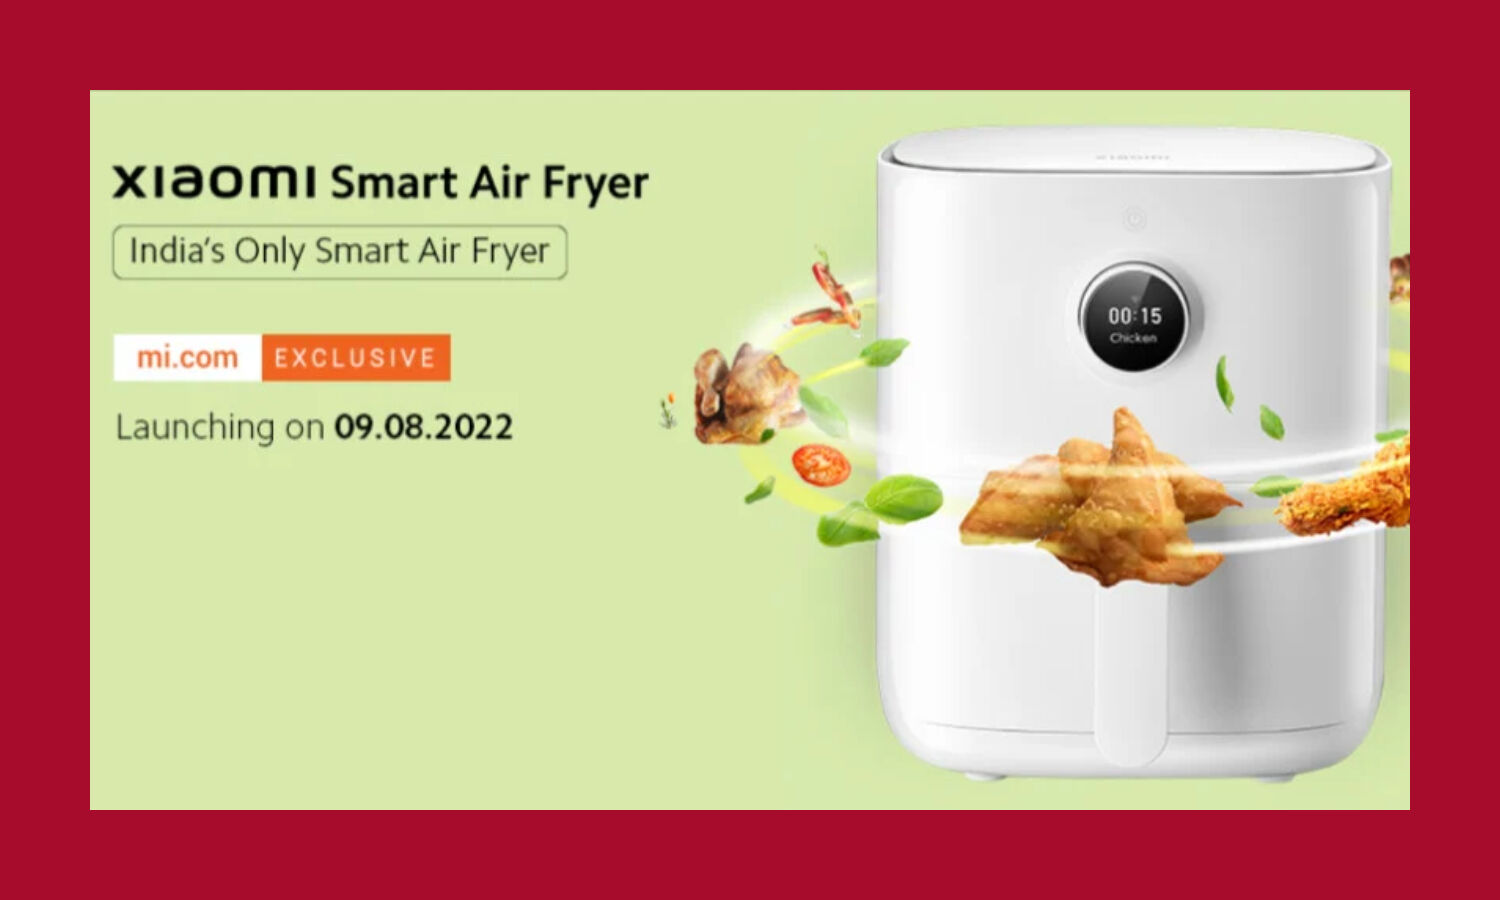 Xiaomi Smart Air Fryer: India's Only Smart Air Fryer 